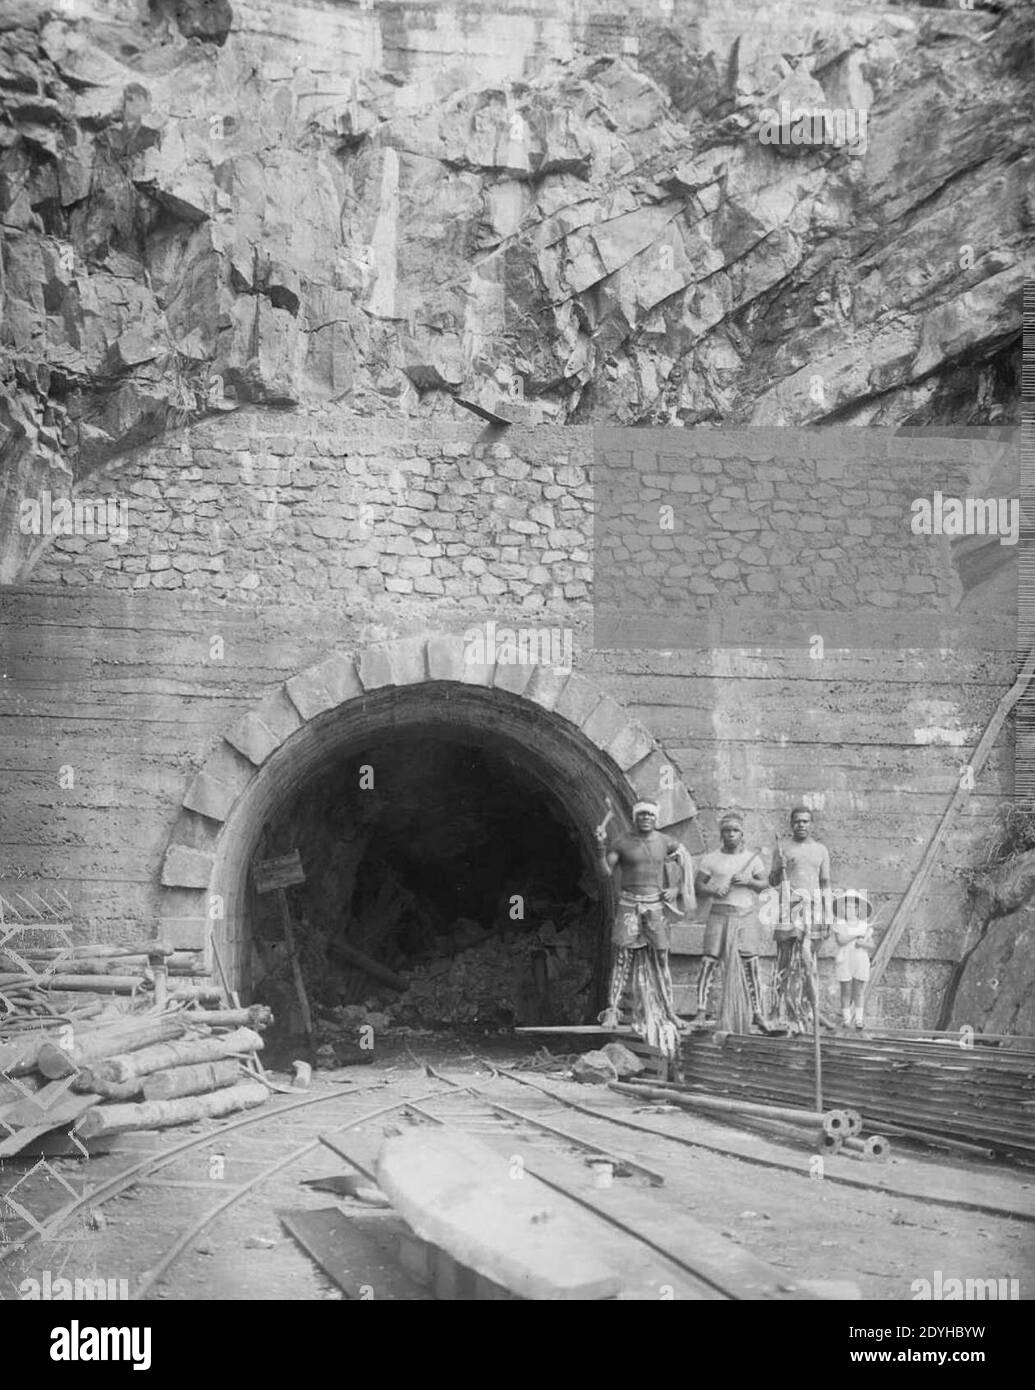 La Société Le Nickel de Nouvelle-Calédonie - Percement du Tunnel de Yaté, 1922. Stockfoto